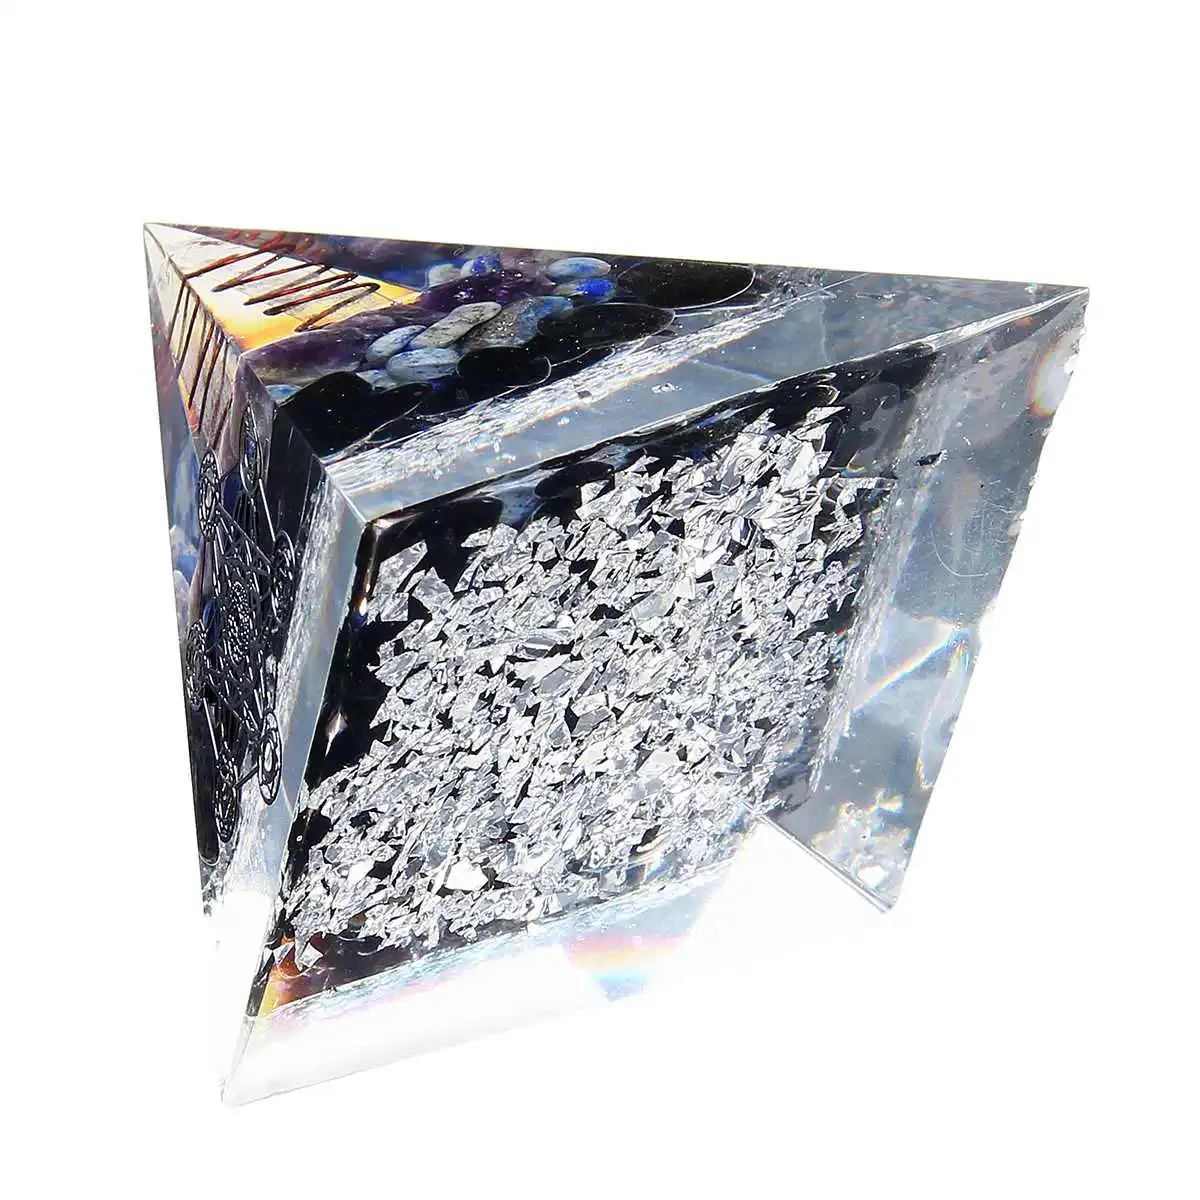 5,5-6,5 см Orgonite улучшение Фортуны помощь бизнес башня натуральный кристалл энергия Orgone Пирамида процесс украшения Смола счастливый подарок